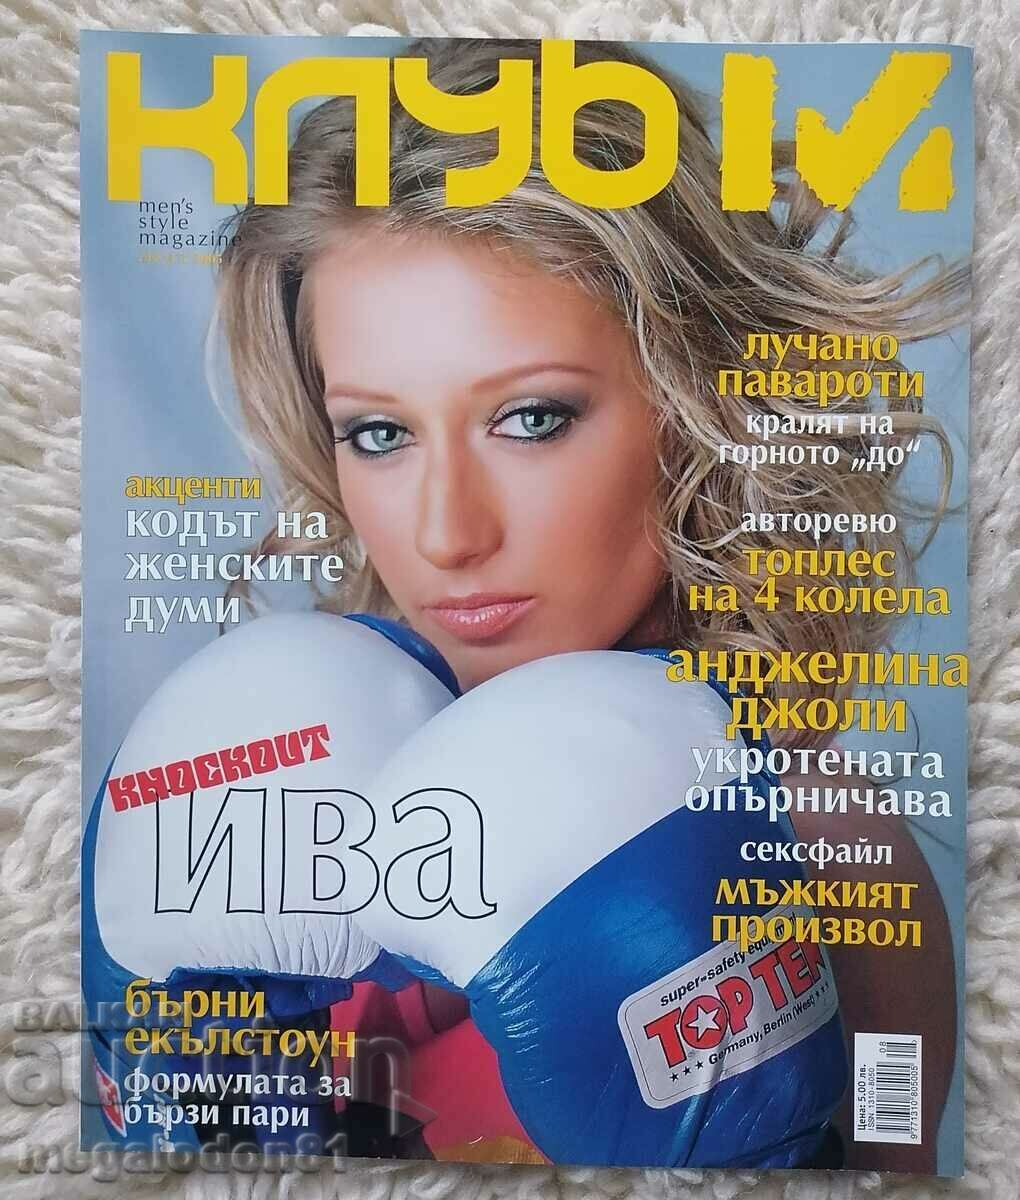 Περιοδικό Club M, Αύγουστος 2005.